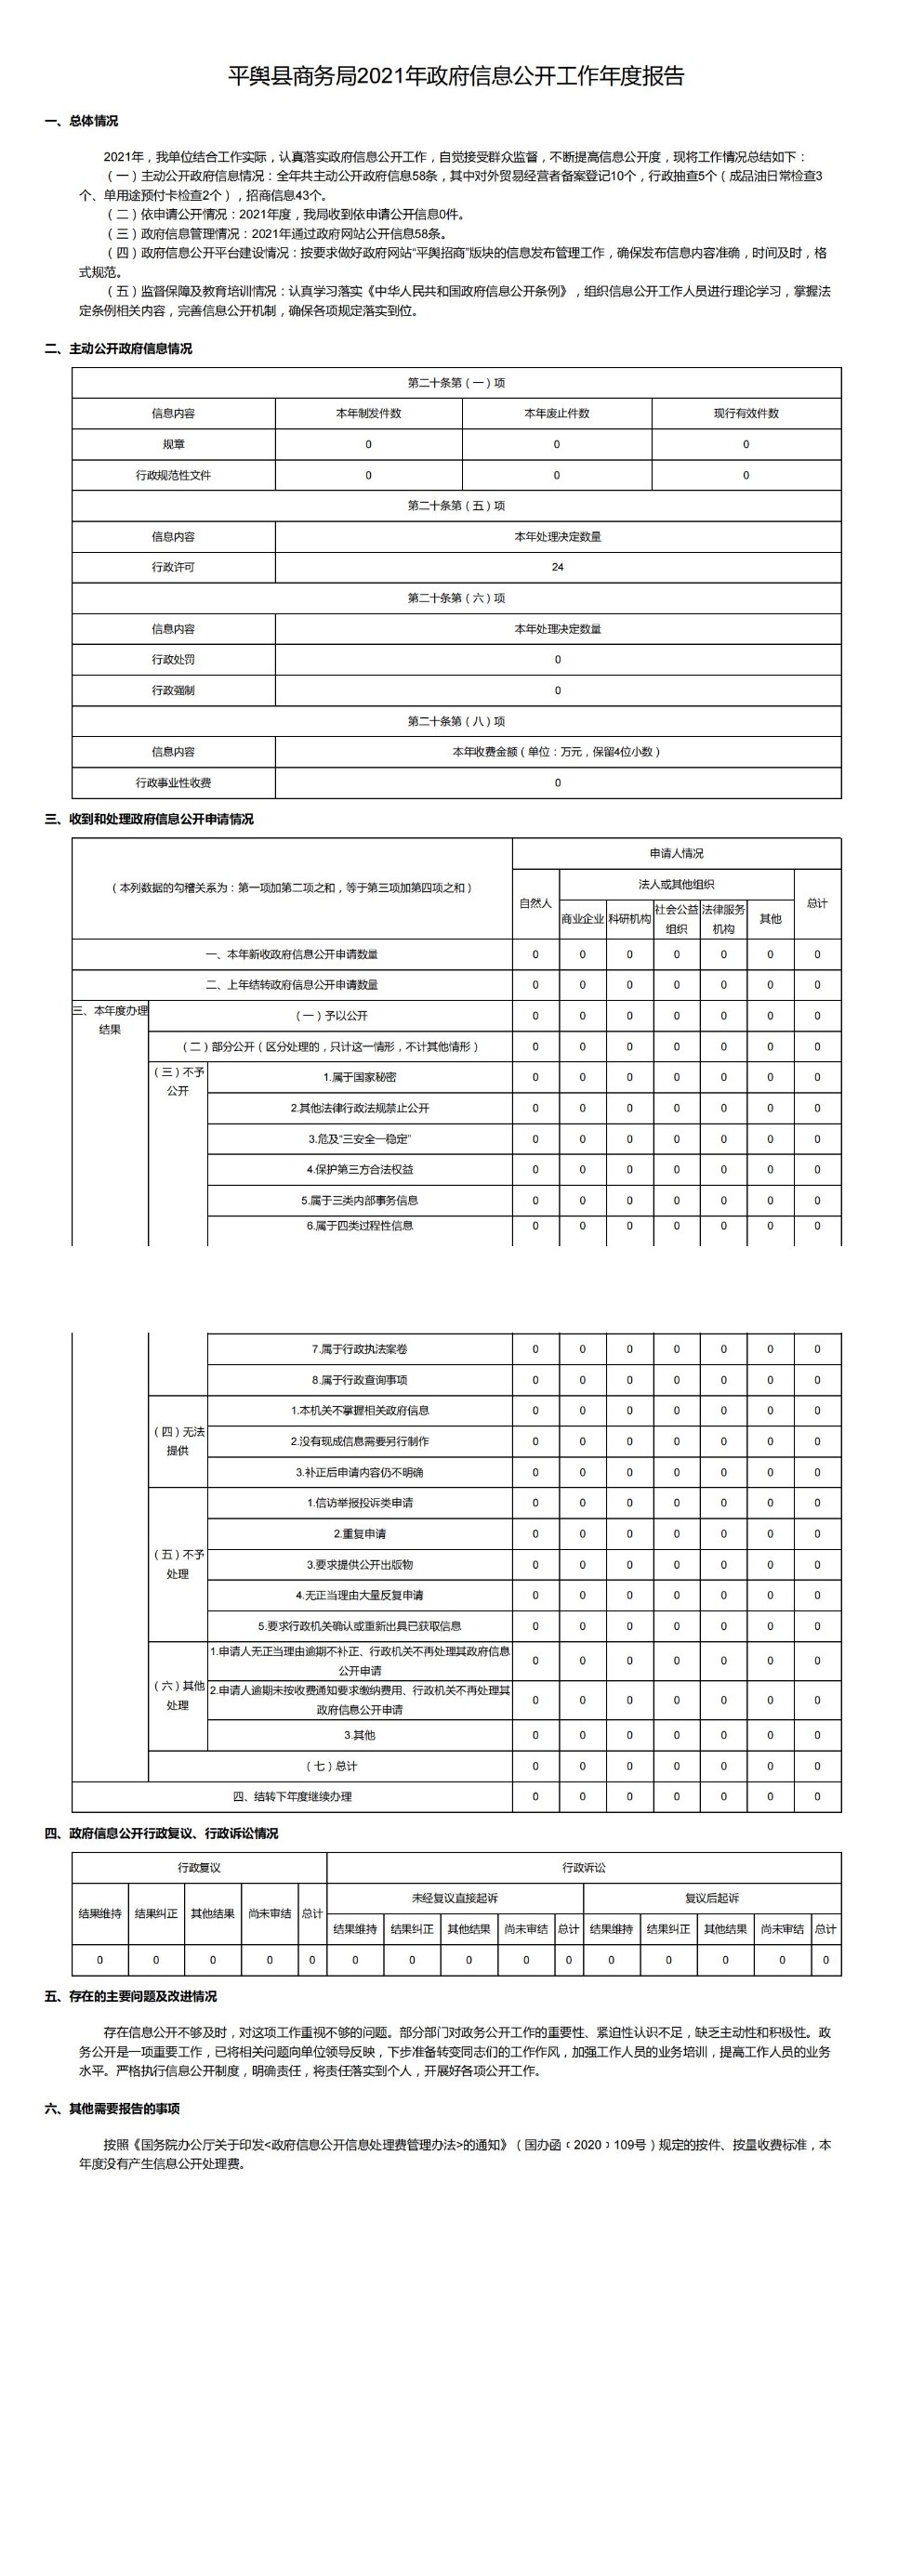 平舆县商务局2021年政府信息公开工作年度报告_00.jpg